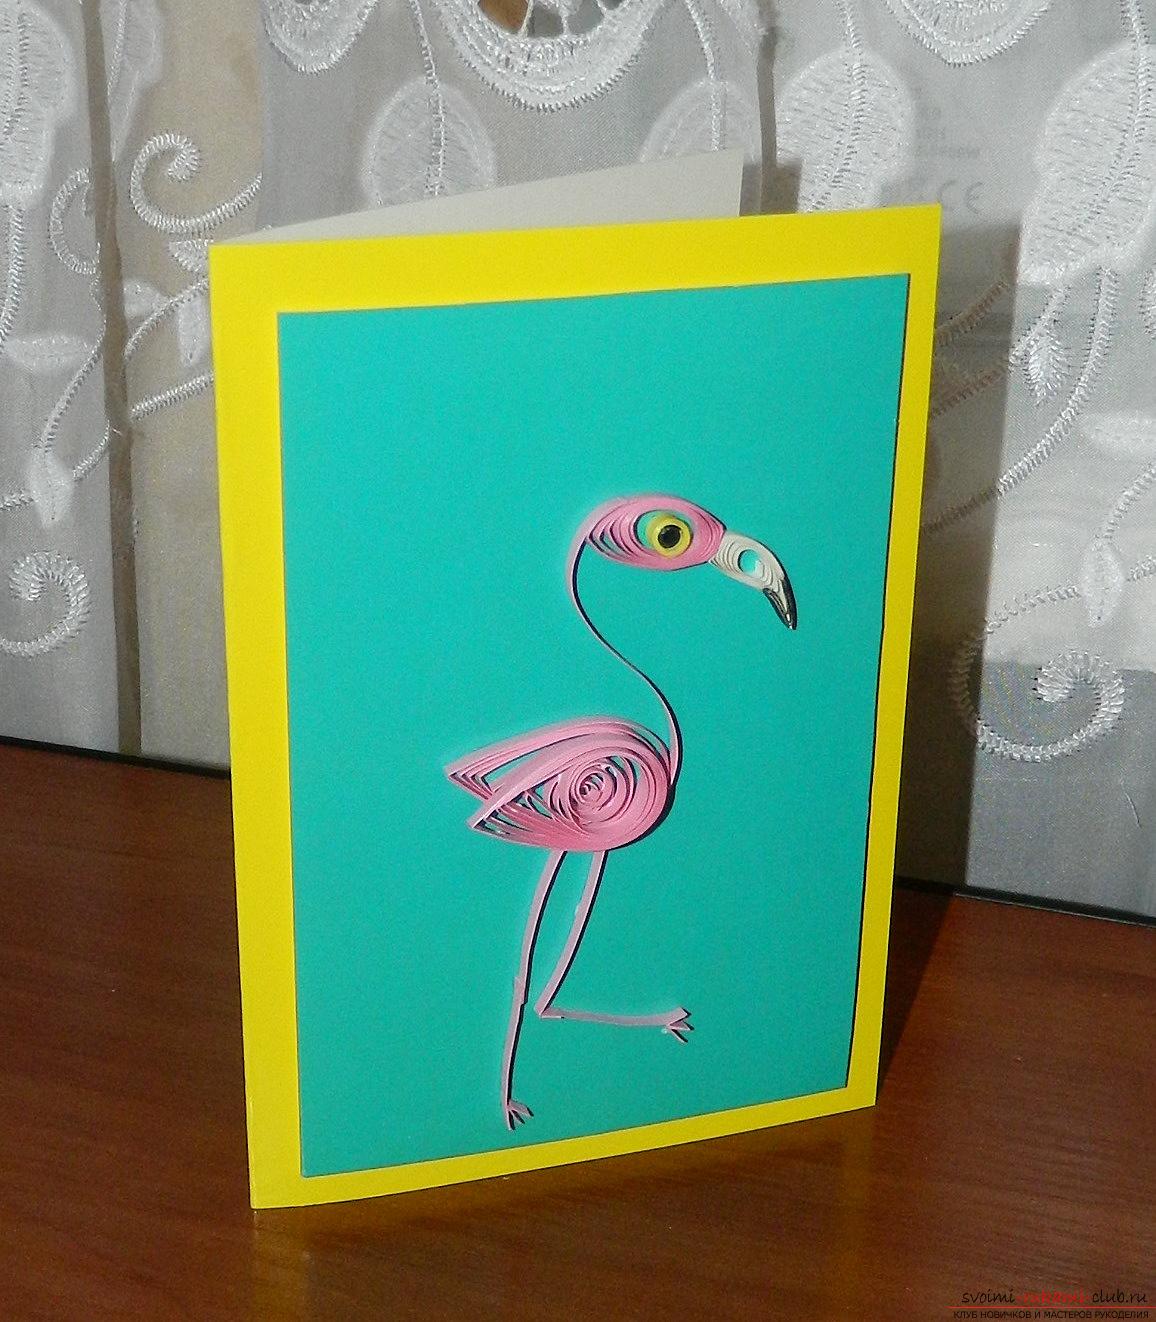 Этот мастер-класс научит как сделать красивые открытки с фламинго своими руками.. Фото №1